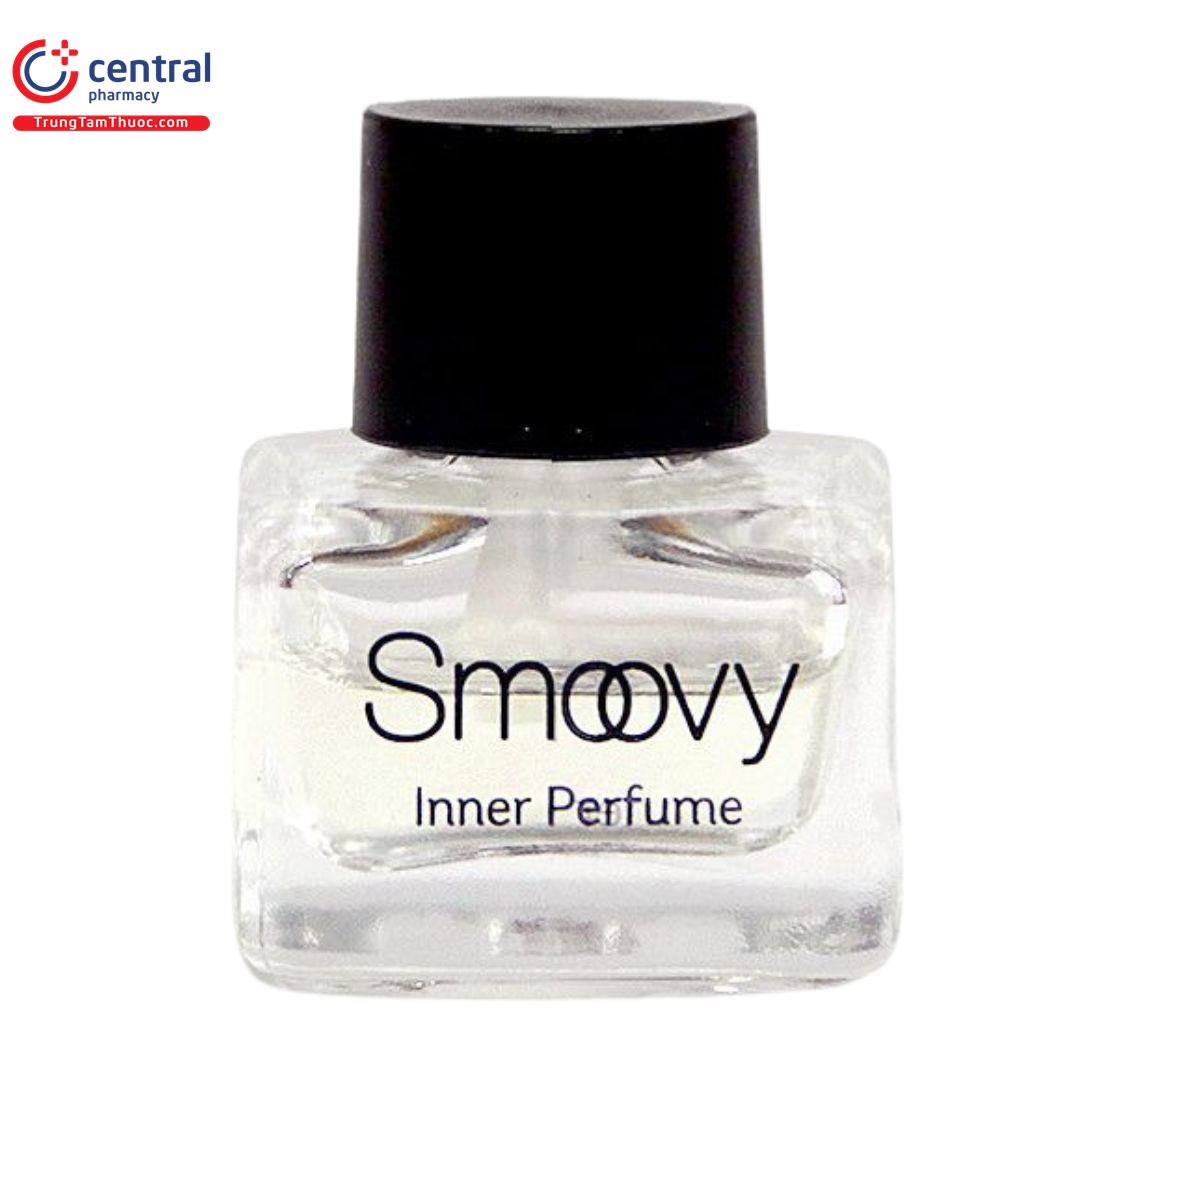 smoovy inner perfume 1 V8085